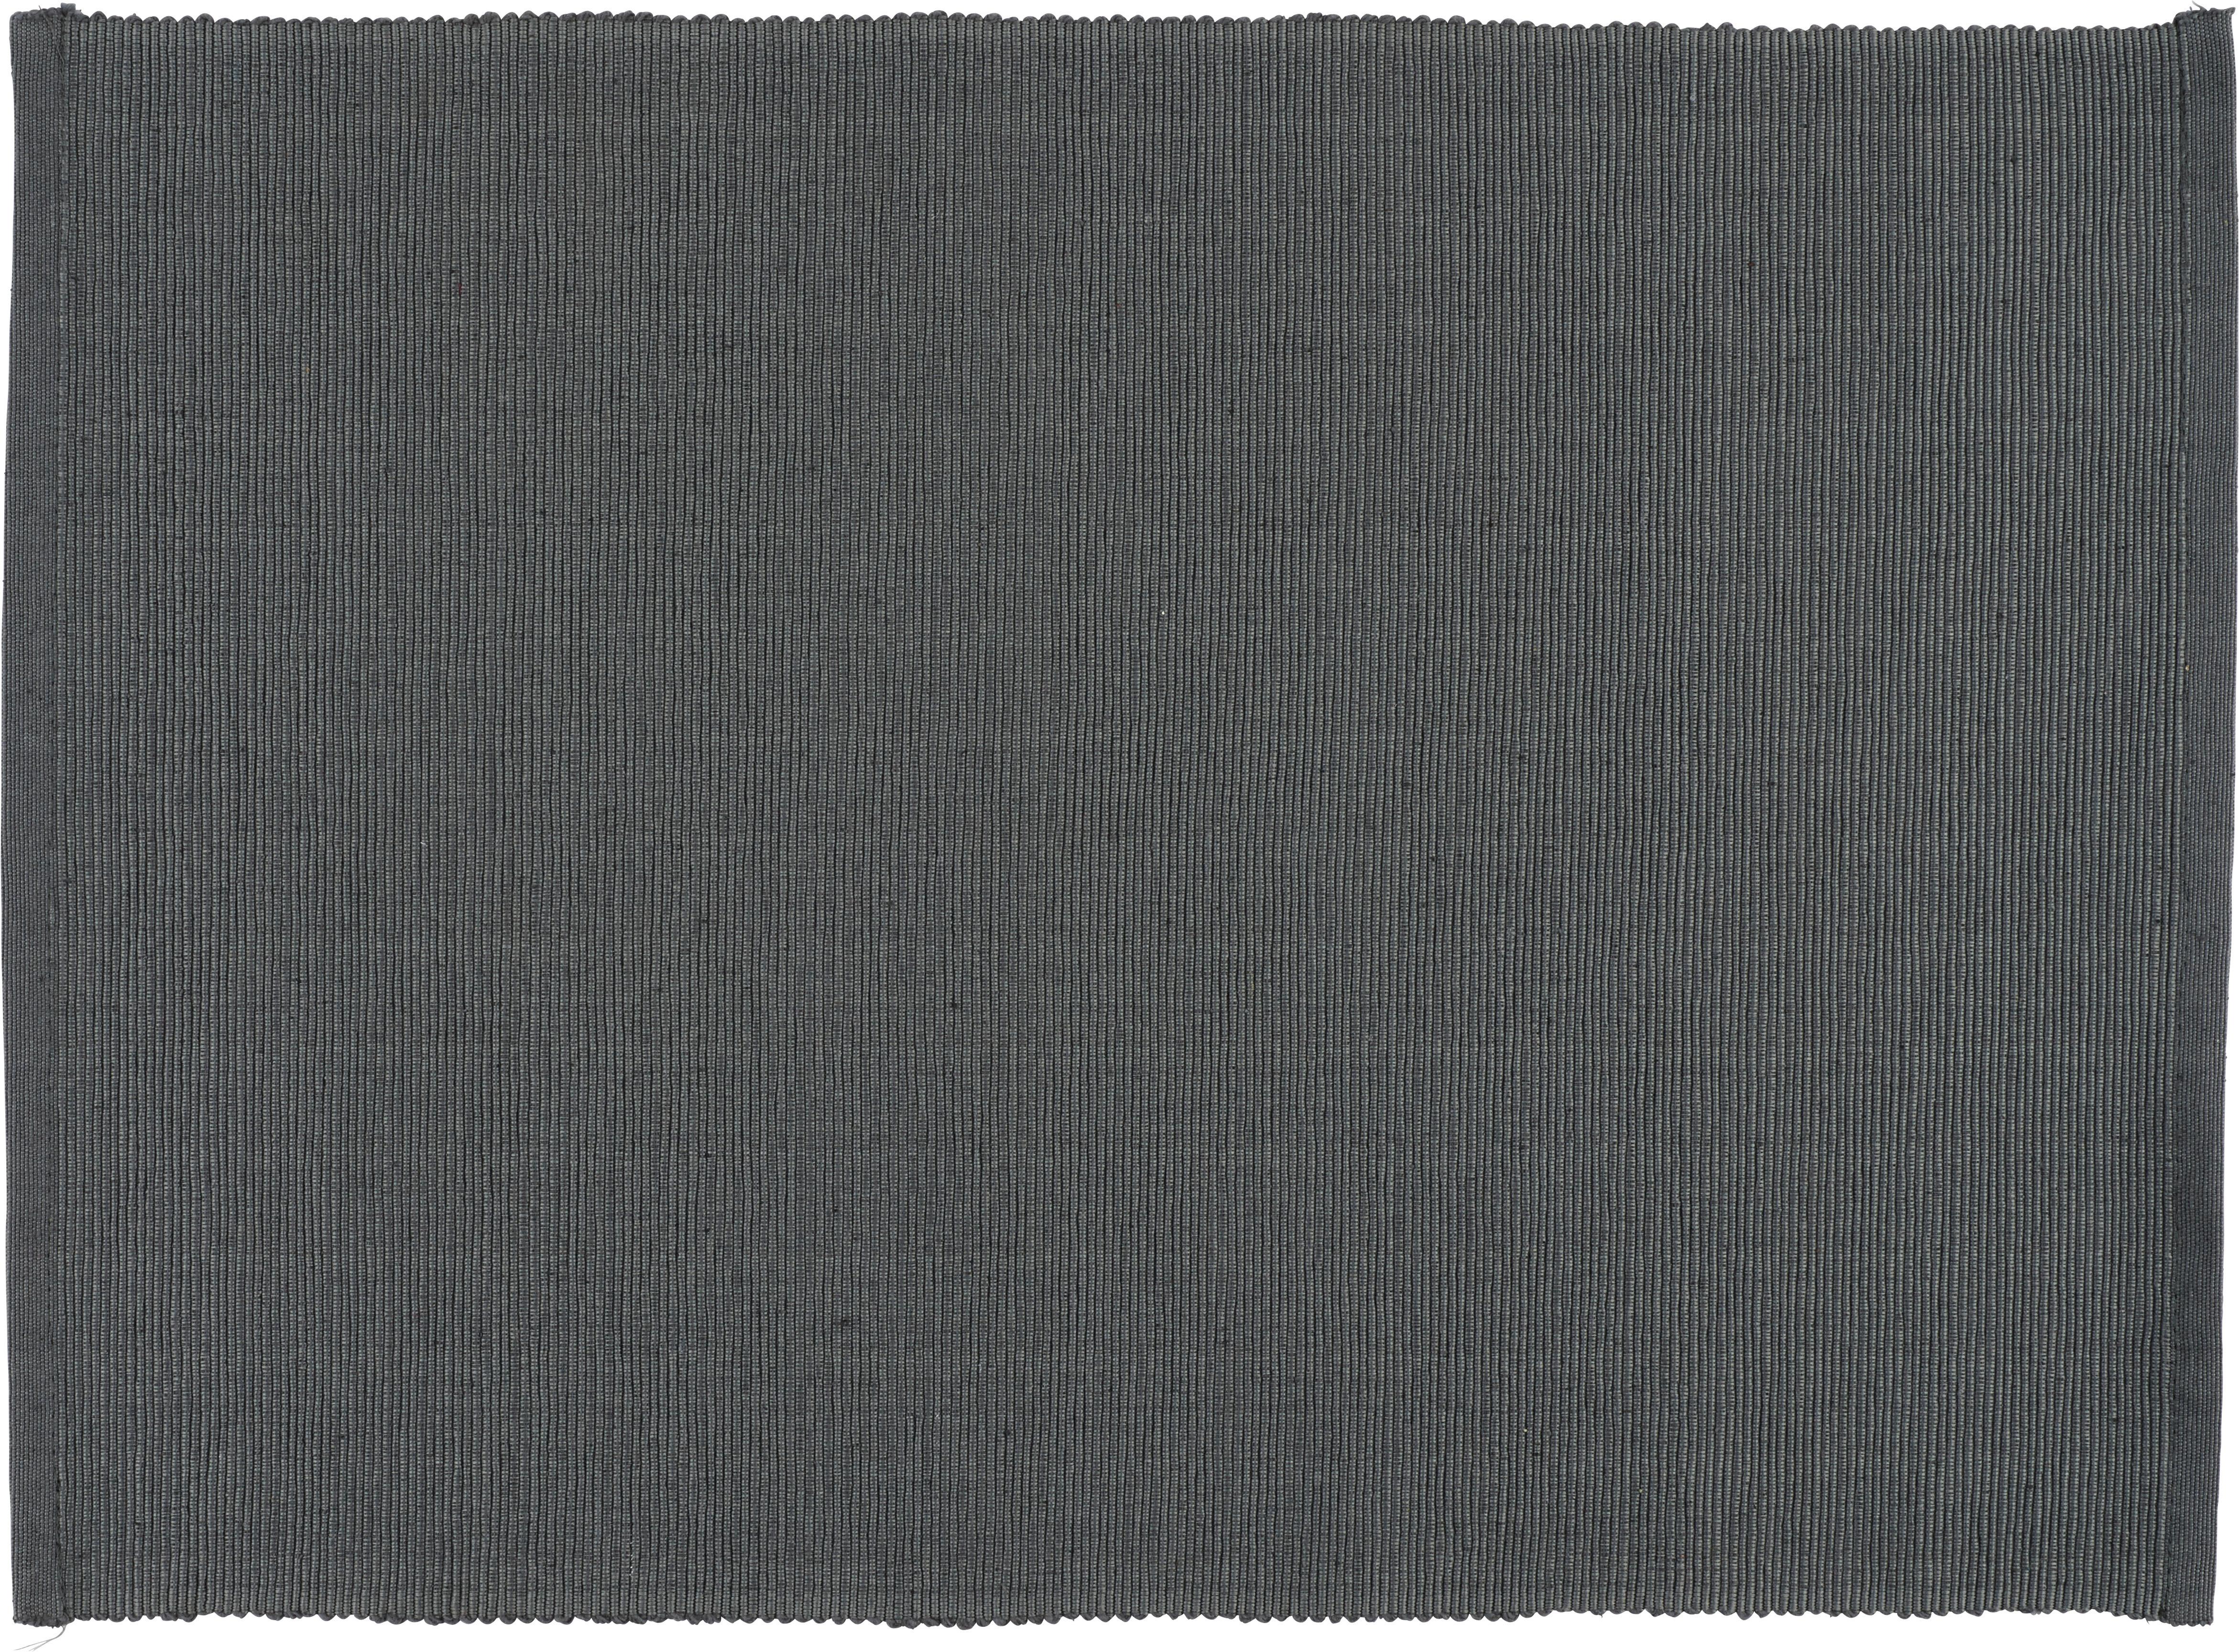 Prostíraní Maren, 33/45cm, Antracitová - antracitová, textil (33/45cm) - Based